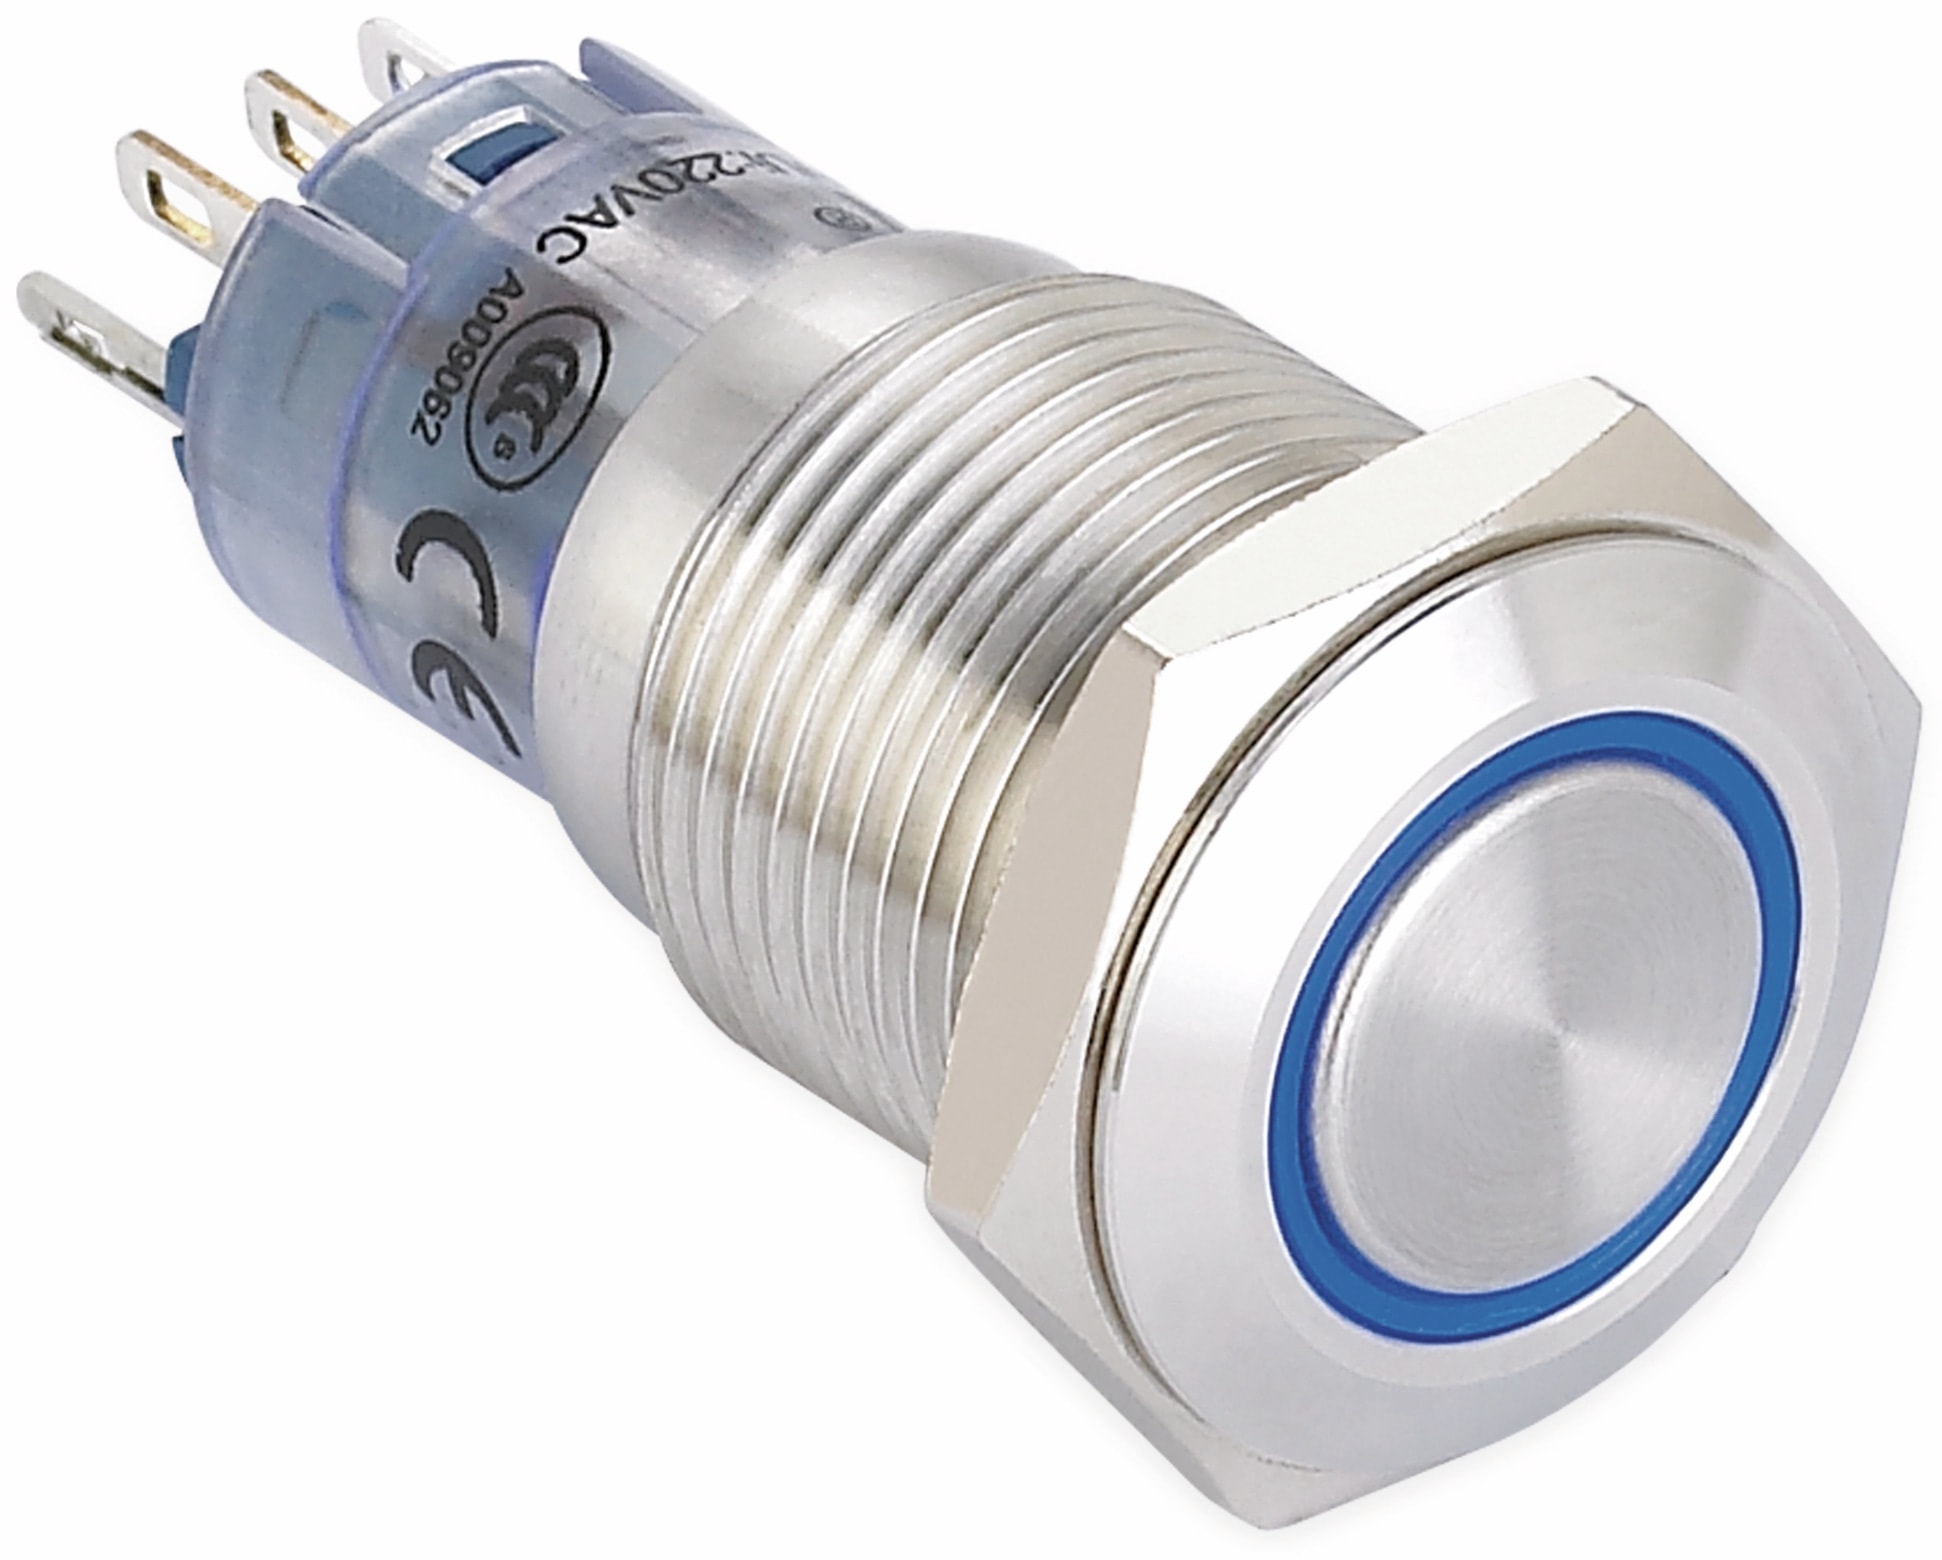 ONPOW Schalter, 24 V/DC, 1x Off/(On), Beleuchtung weiß, Lötanschluss, flach rund, Edelstahl, 16 mm